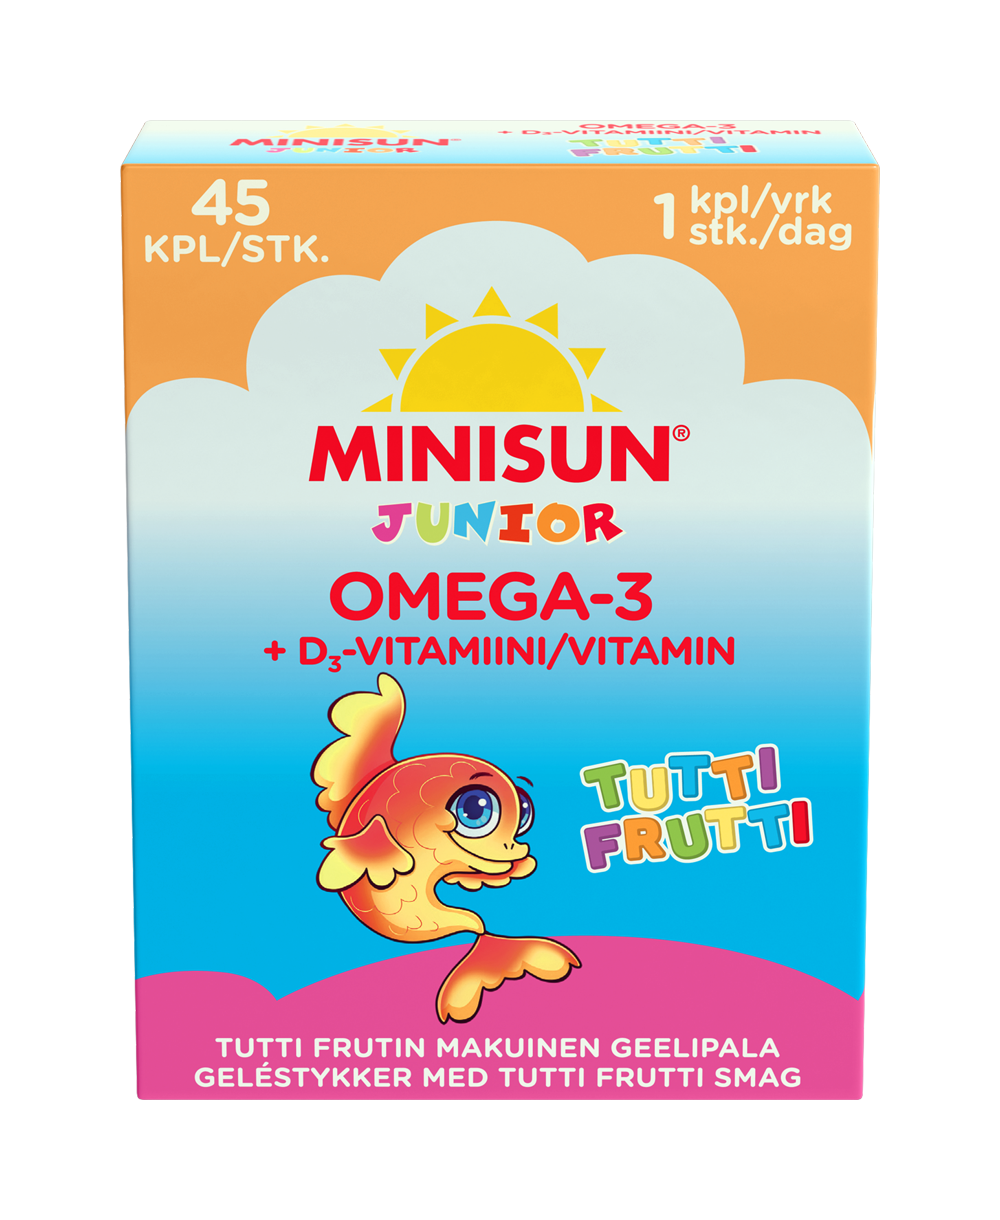 Brug Biosym MiniSun Omega-3 (45 stk) til en forbedret oplevelse